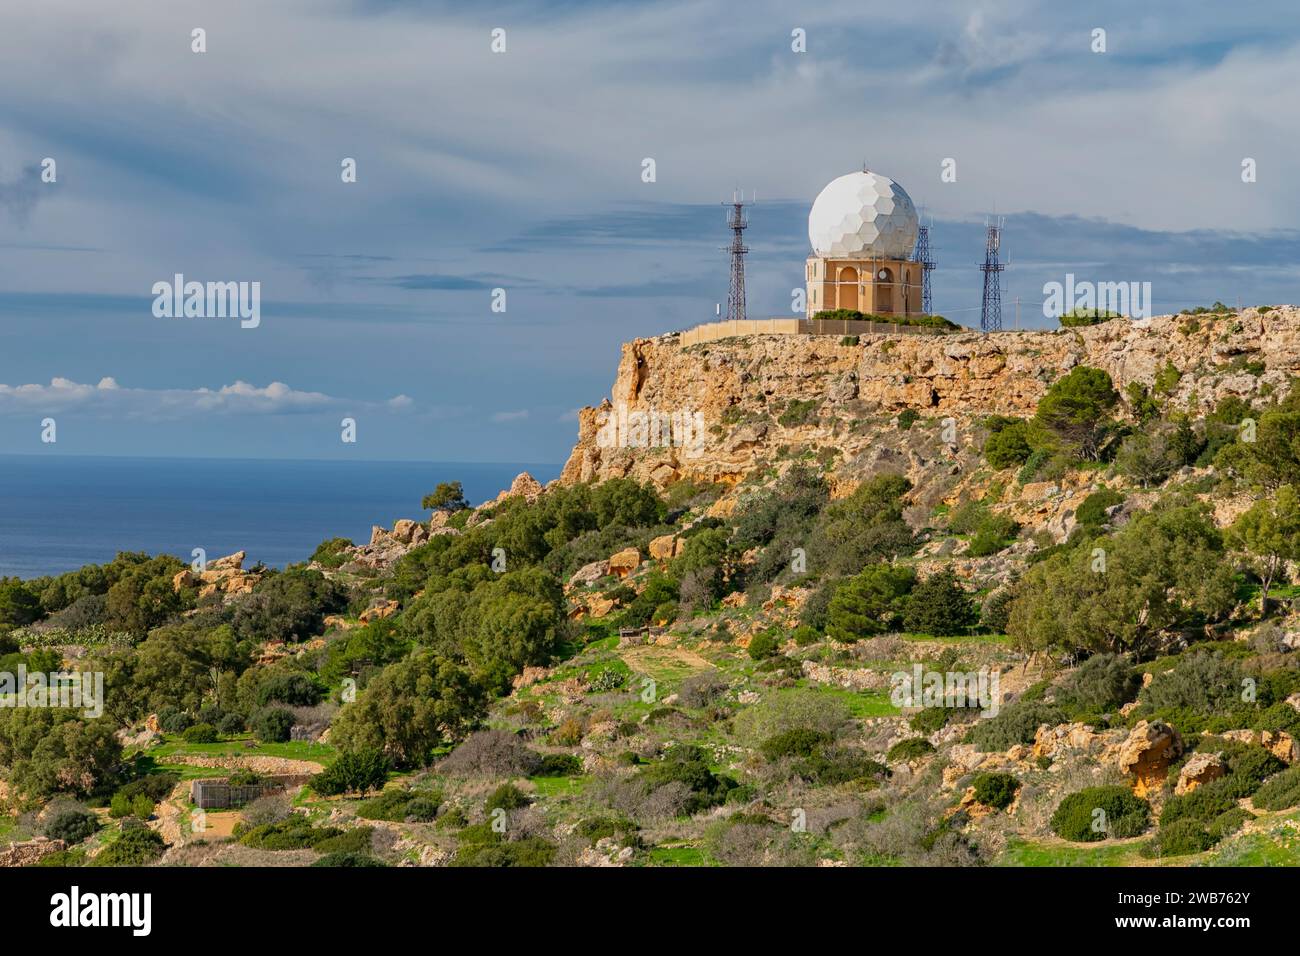 Radarstation bei Dingli Cliffs, Malta Stockfoto